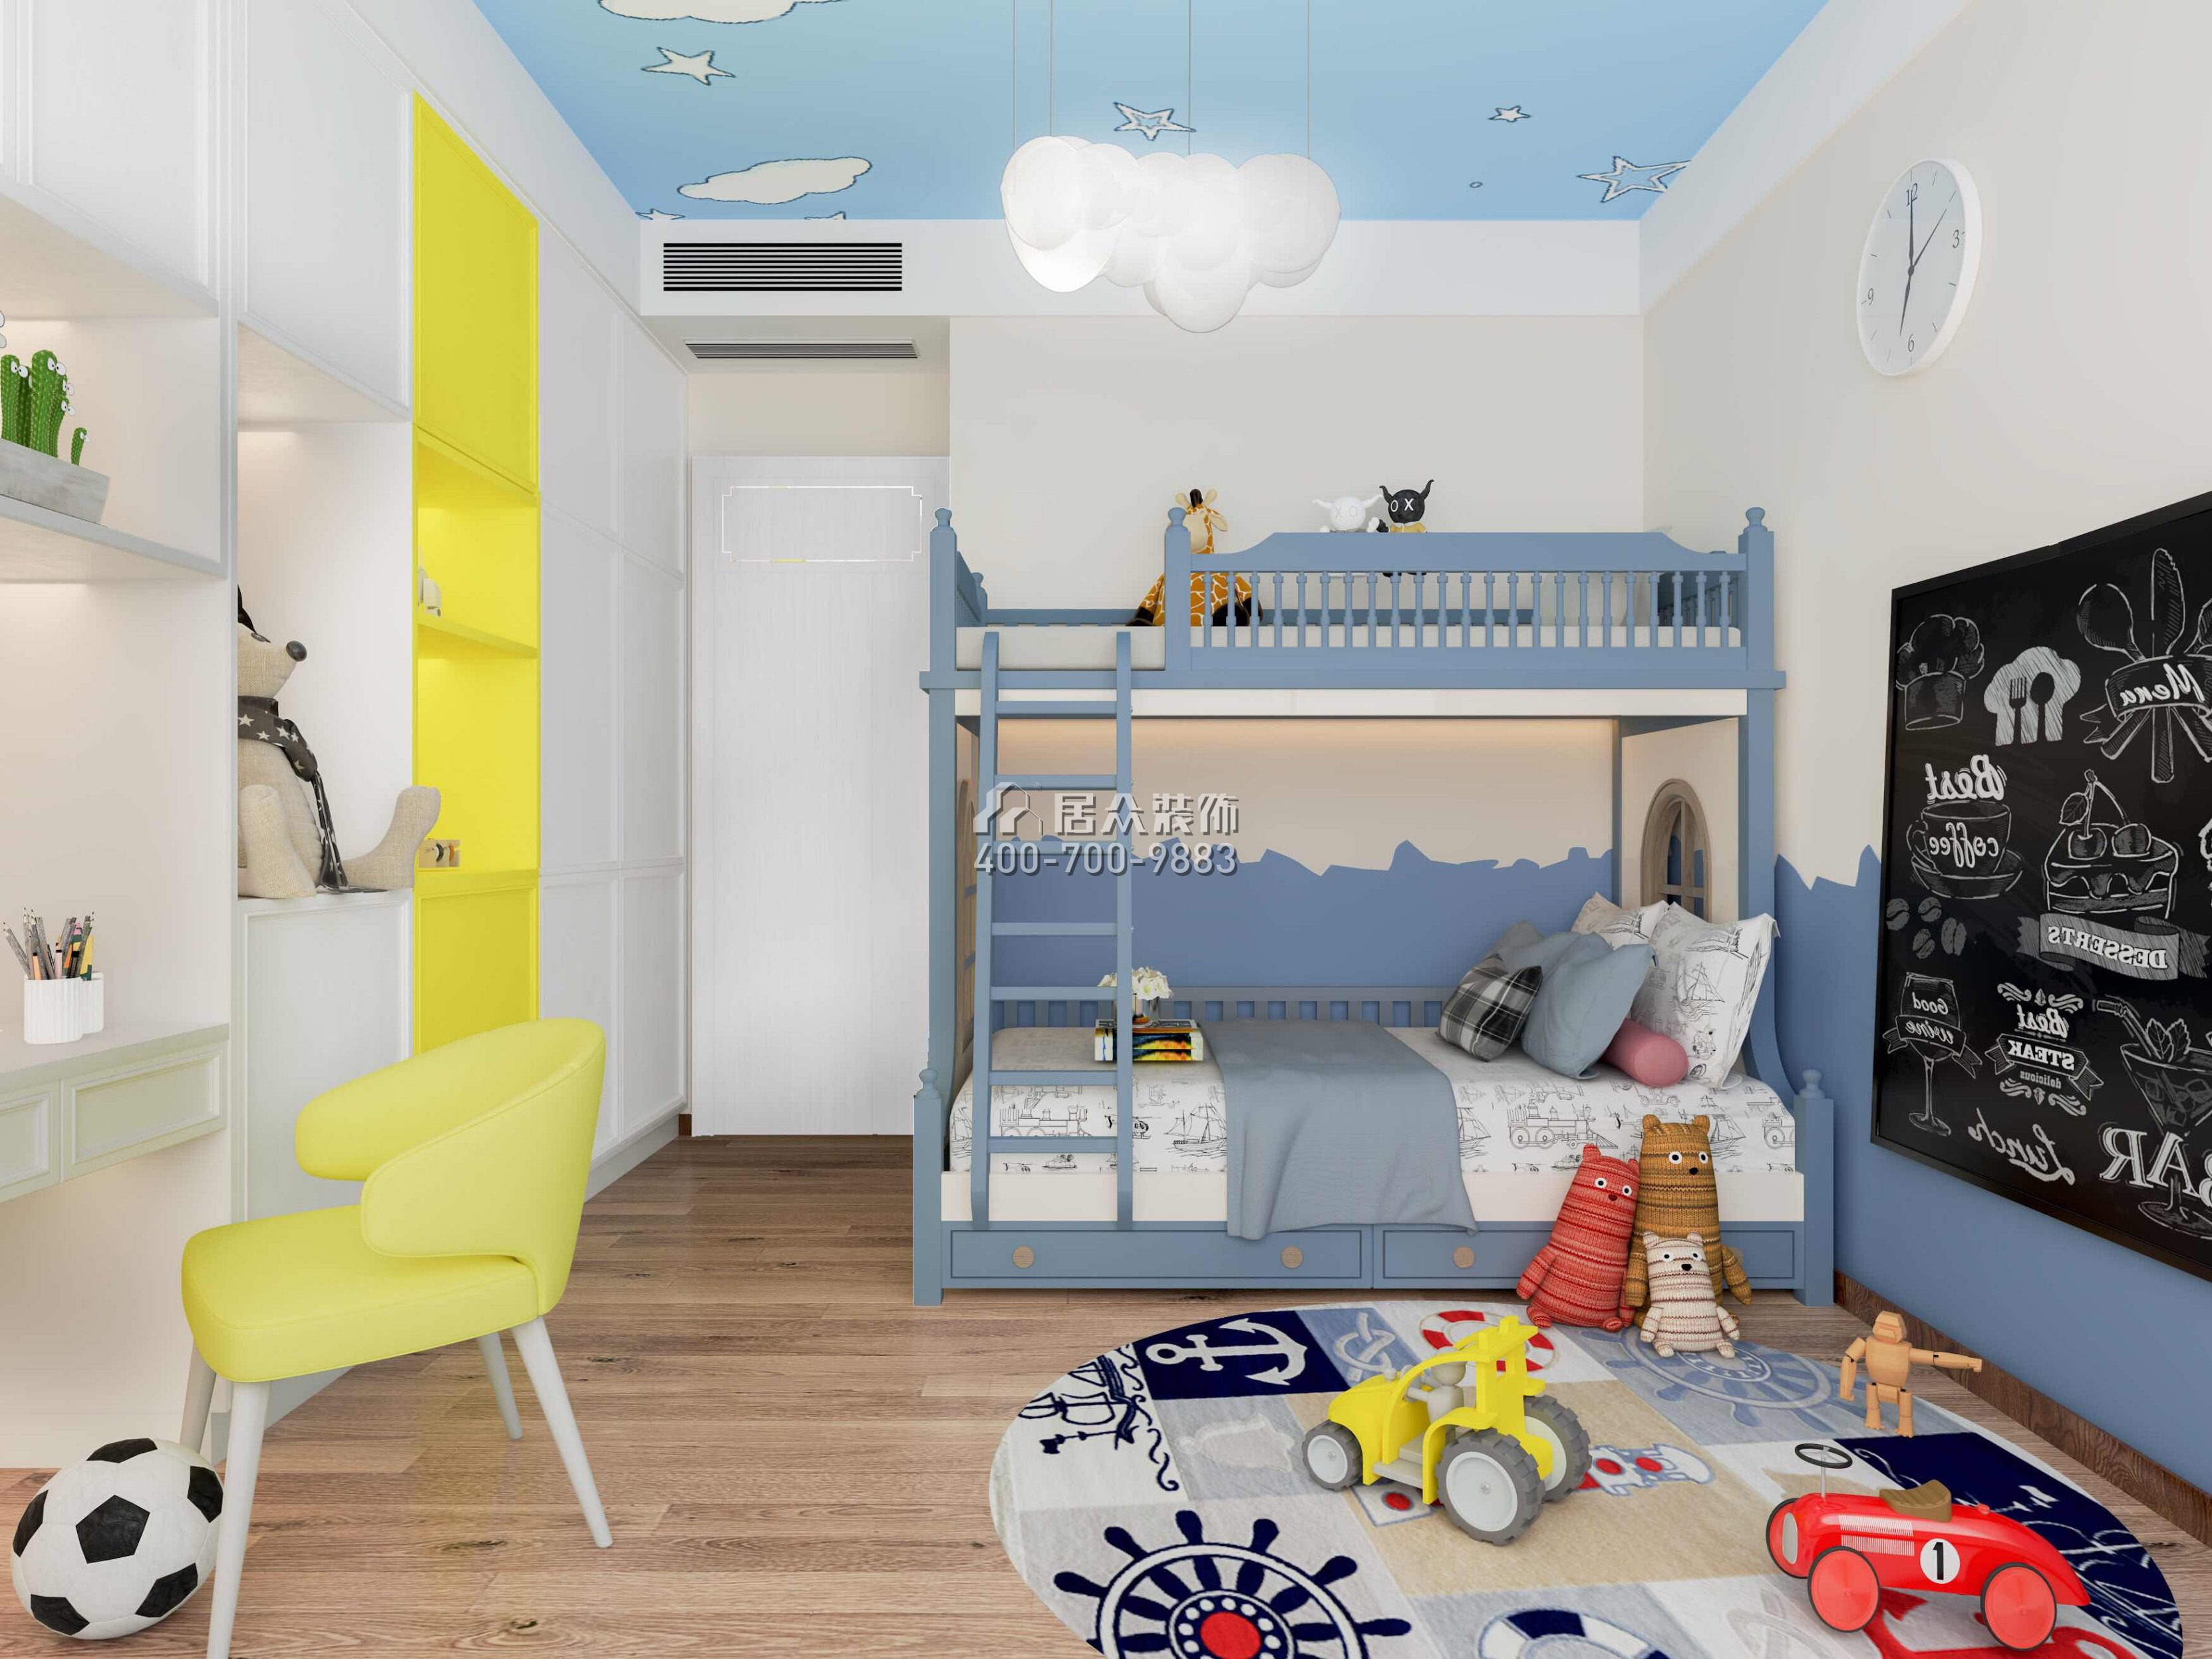 华发新城226平方米中式风格平层户型儿童房装修效果图